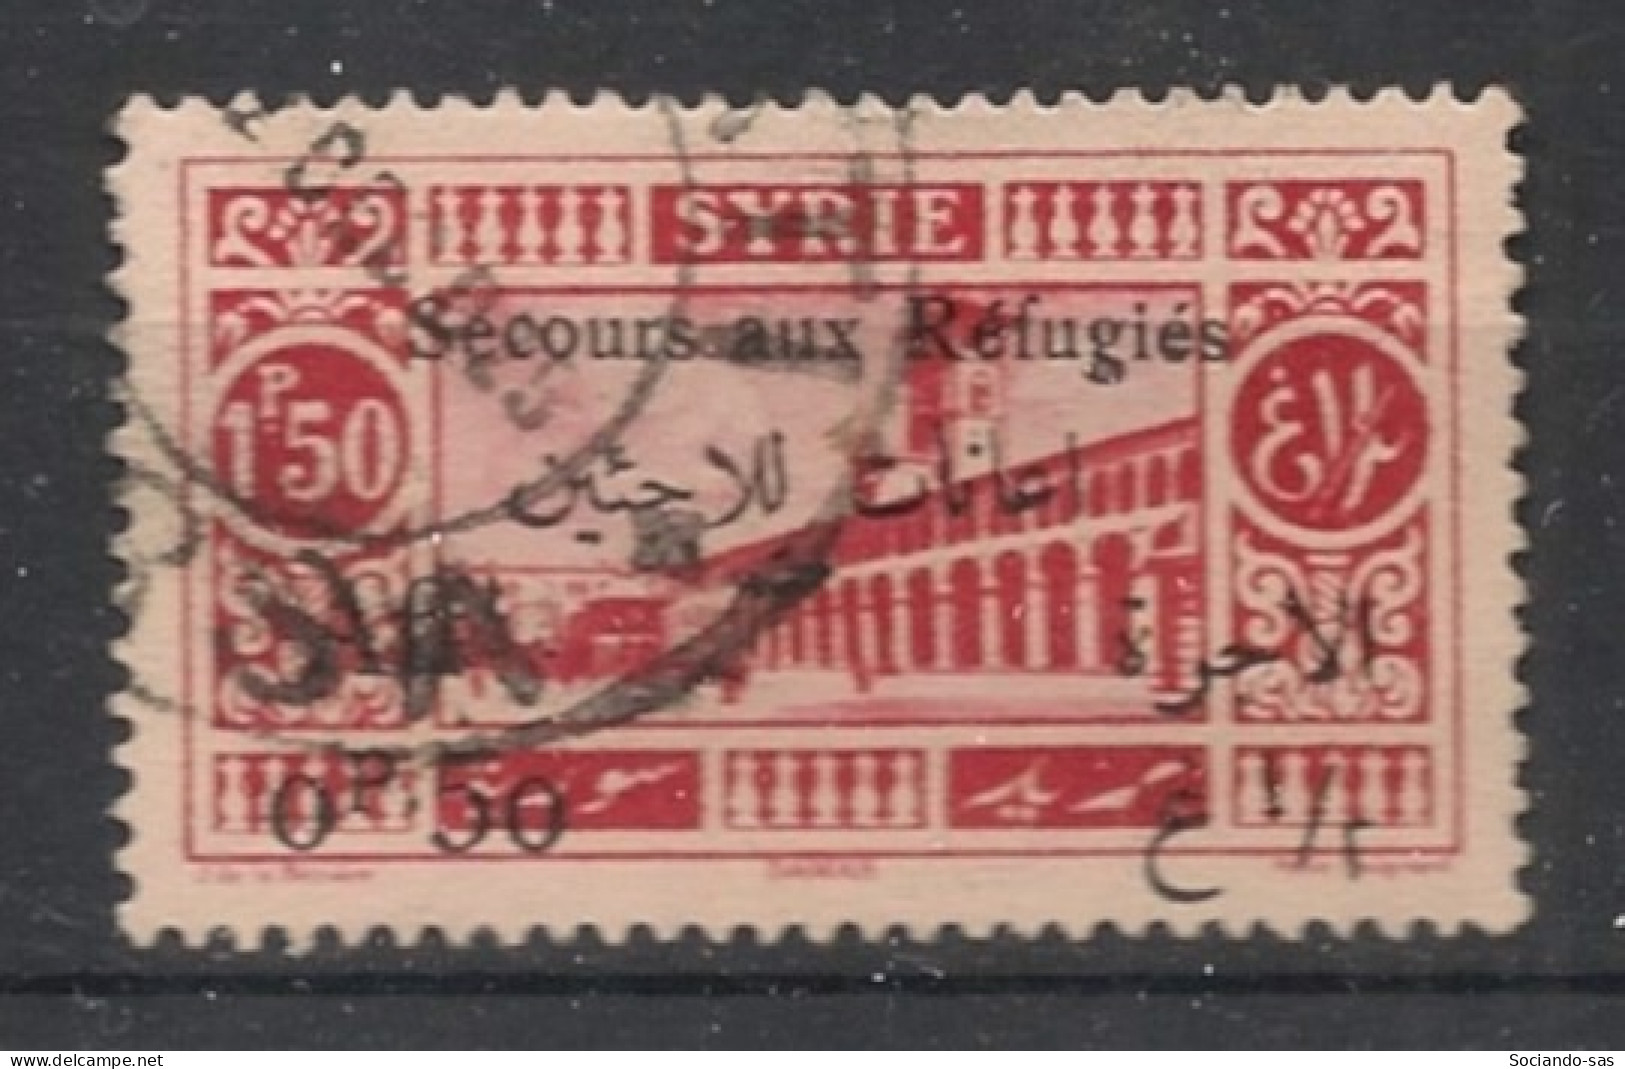 SYRIE - 1926 - N°YT. 172 - Réfugiés 0pi50 Sur 1pi50 - Oblitéré / Used - Used Stamps